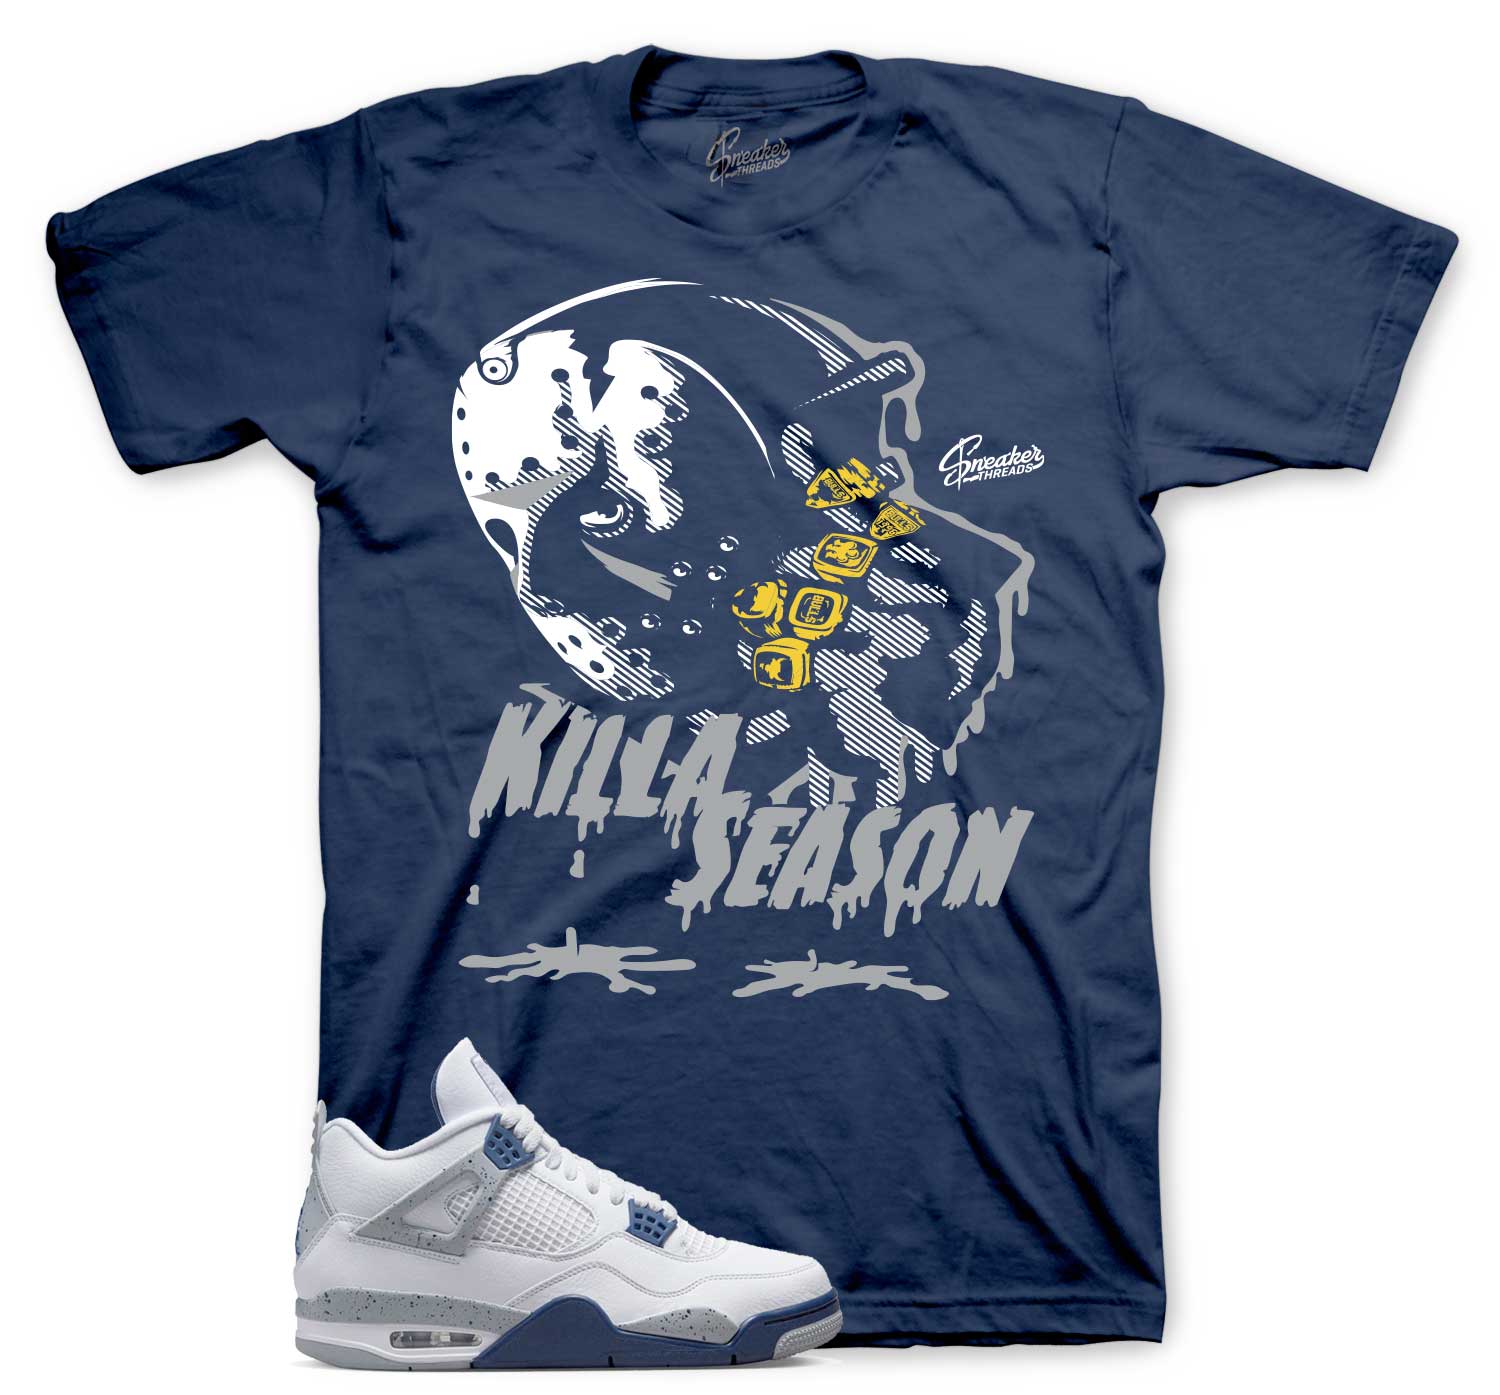 Retro 4 Midngiht Navy Shirt - Killa Season - Navy